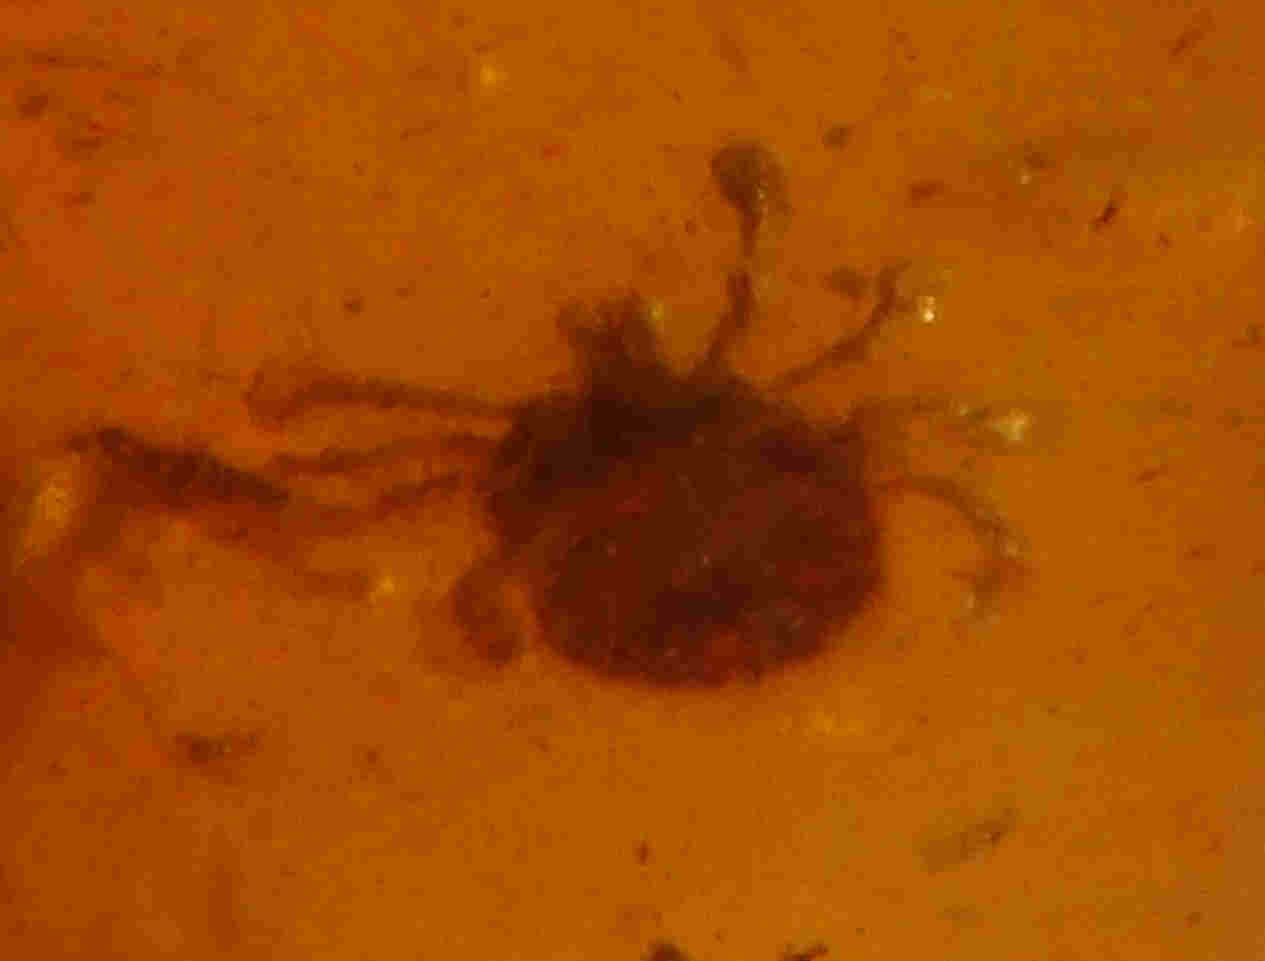 Spider mite in amber